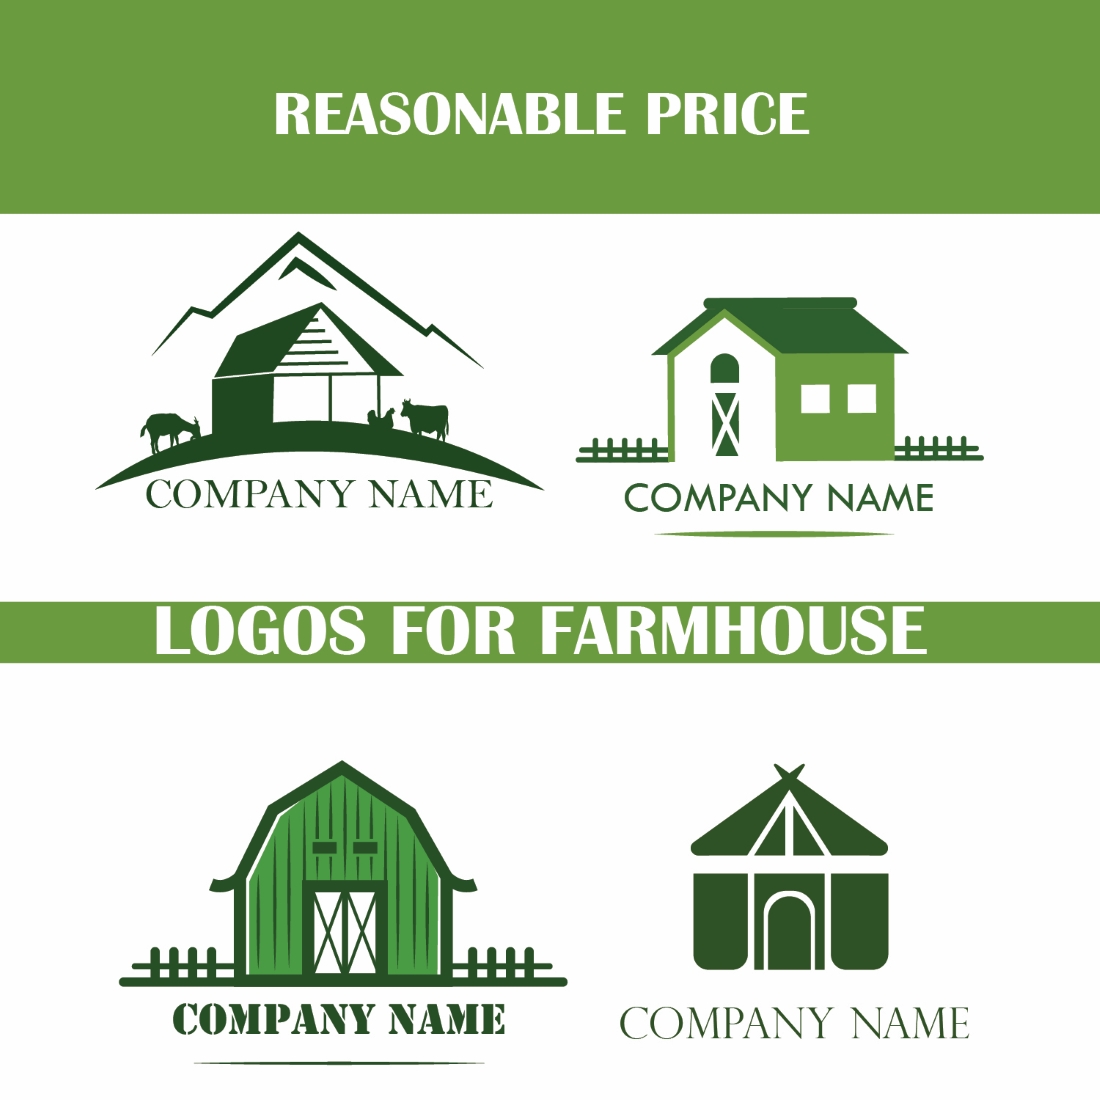 Farmhouse Logos main cover.